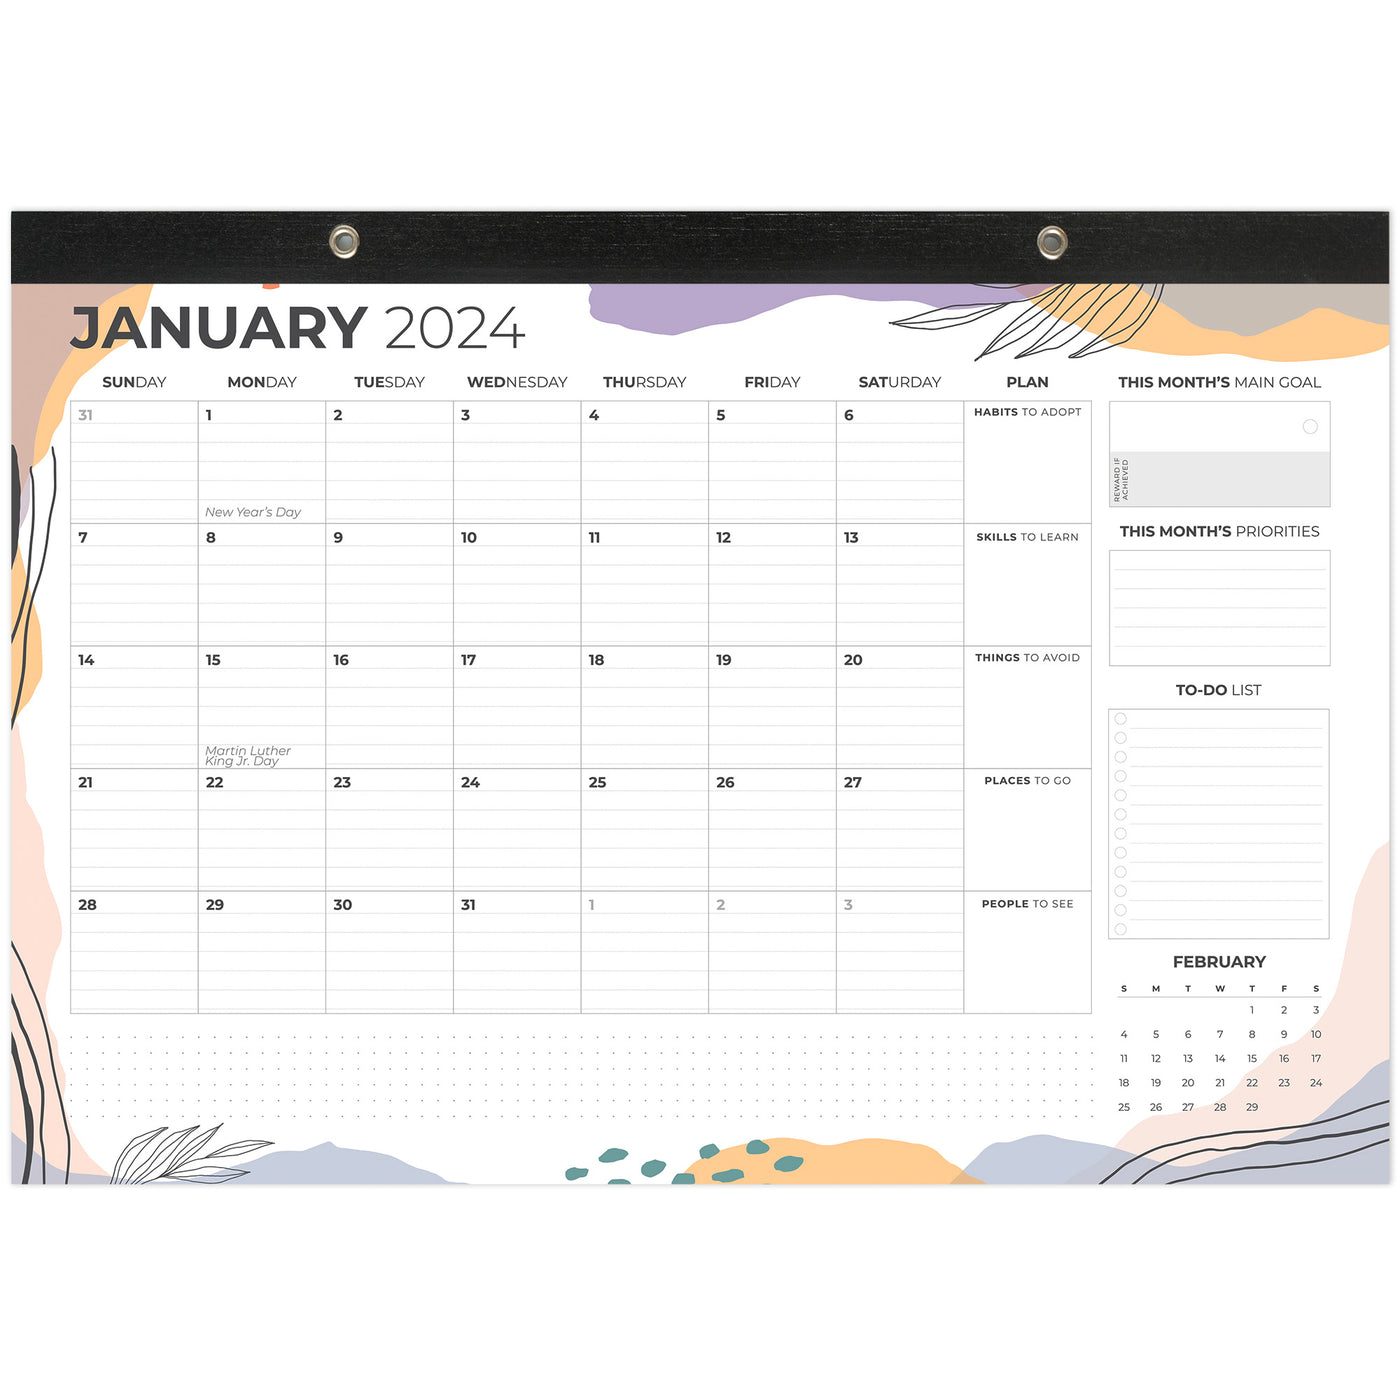 Desk Calendar 2024-2025